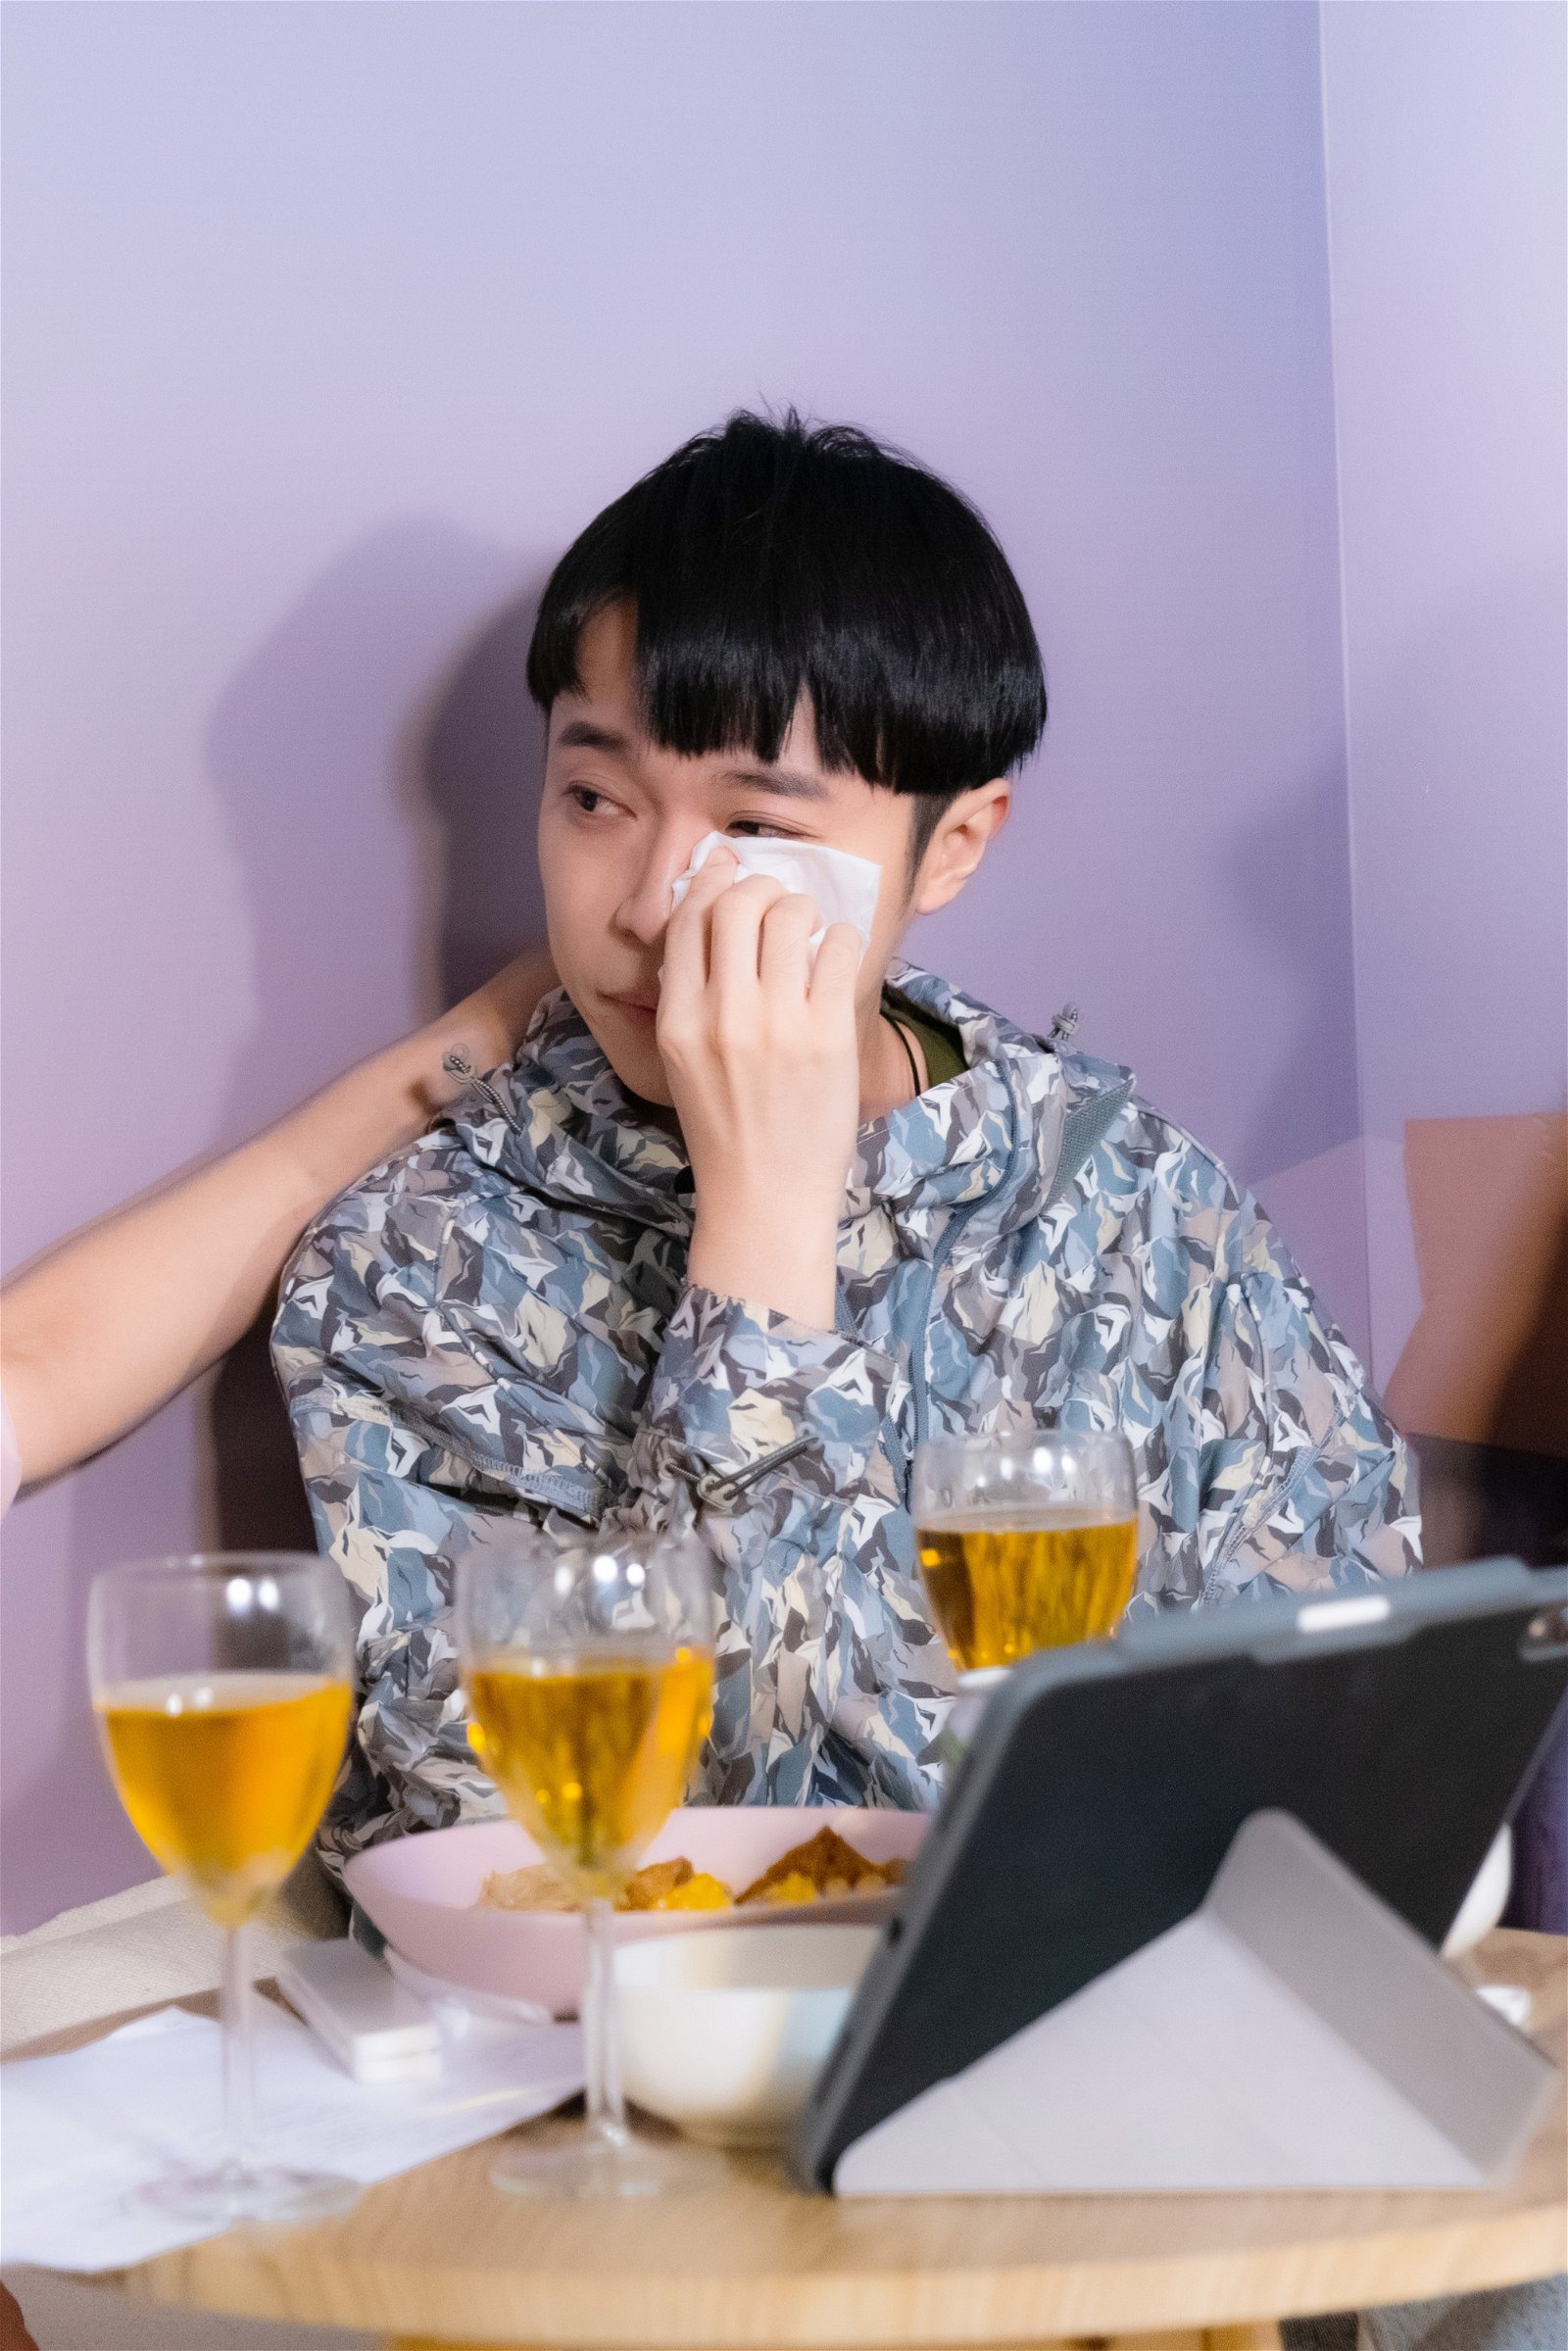 吴青峰在线上陪网民看完全长1个多小时的12支MV，他忆述整个过程时还一度泪眼婆娑。